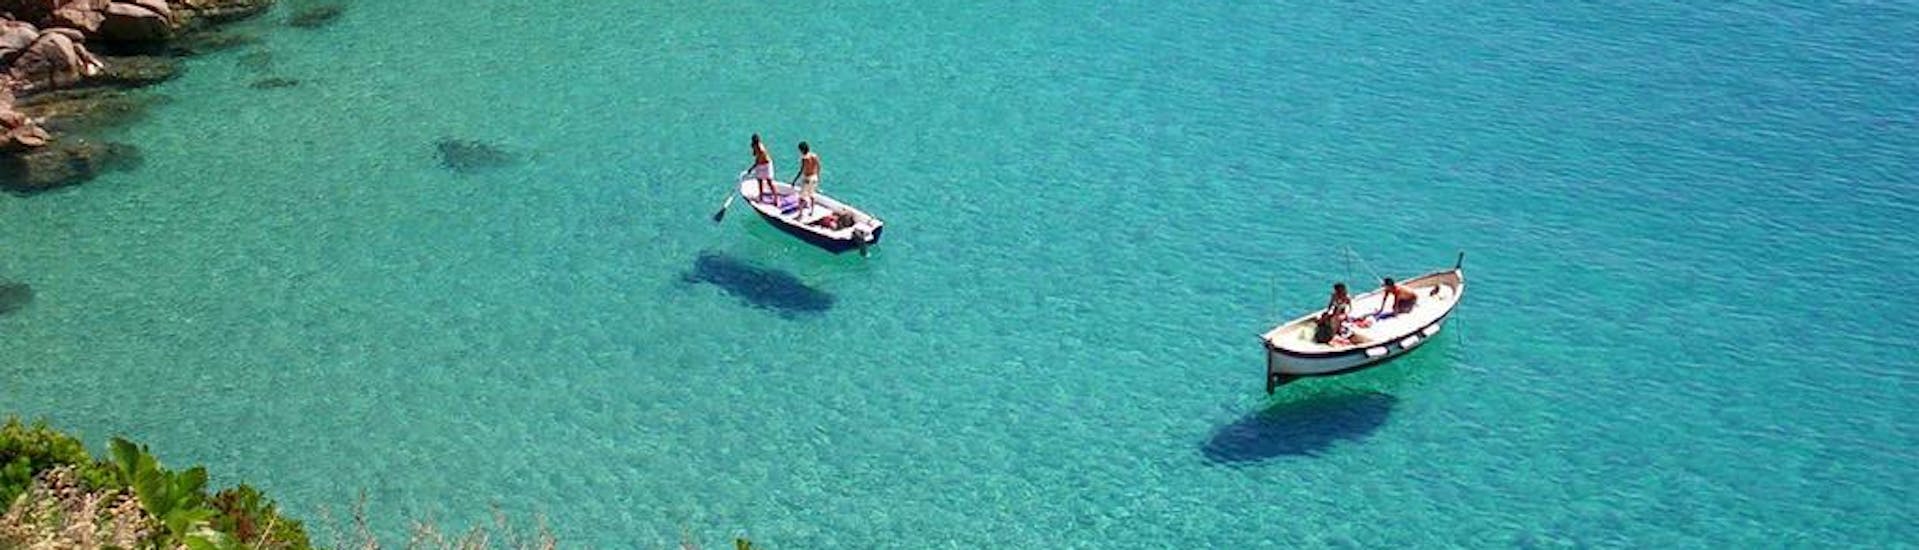 La mer aux eaux claires de l'île de Giglio lors de la balade en bateau vers l'île de Giglio avec déjeuner et snorkeling avec La Favorita sul Mare Argentario.